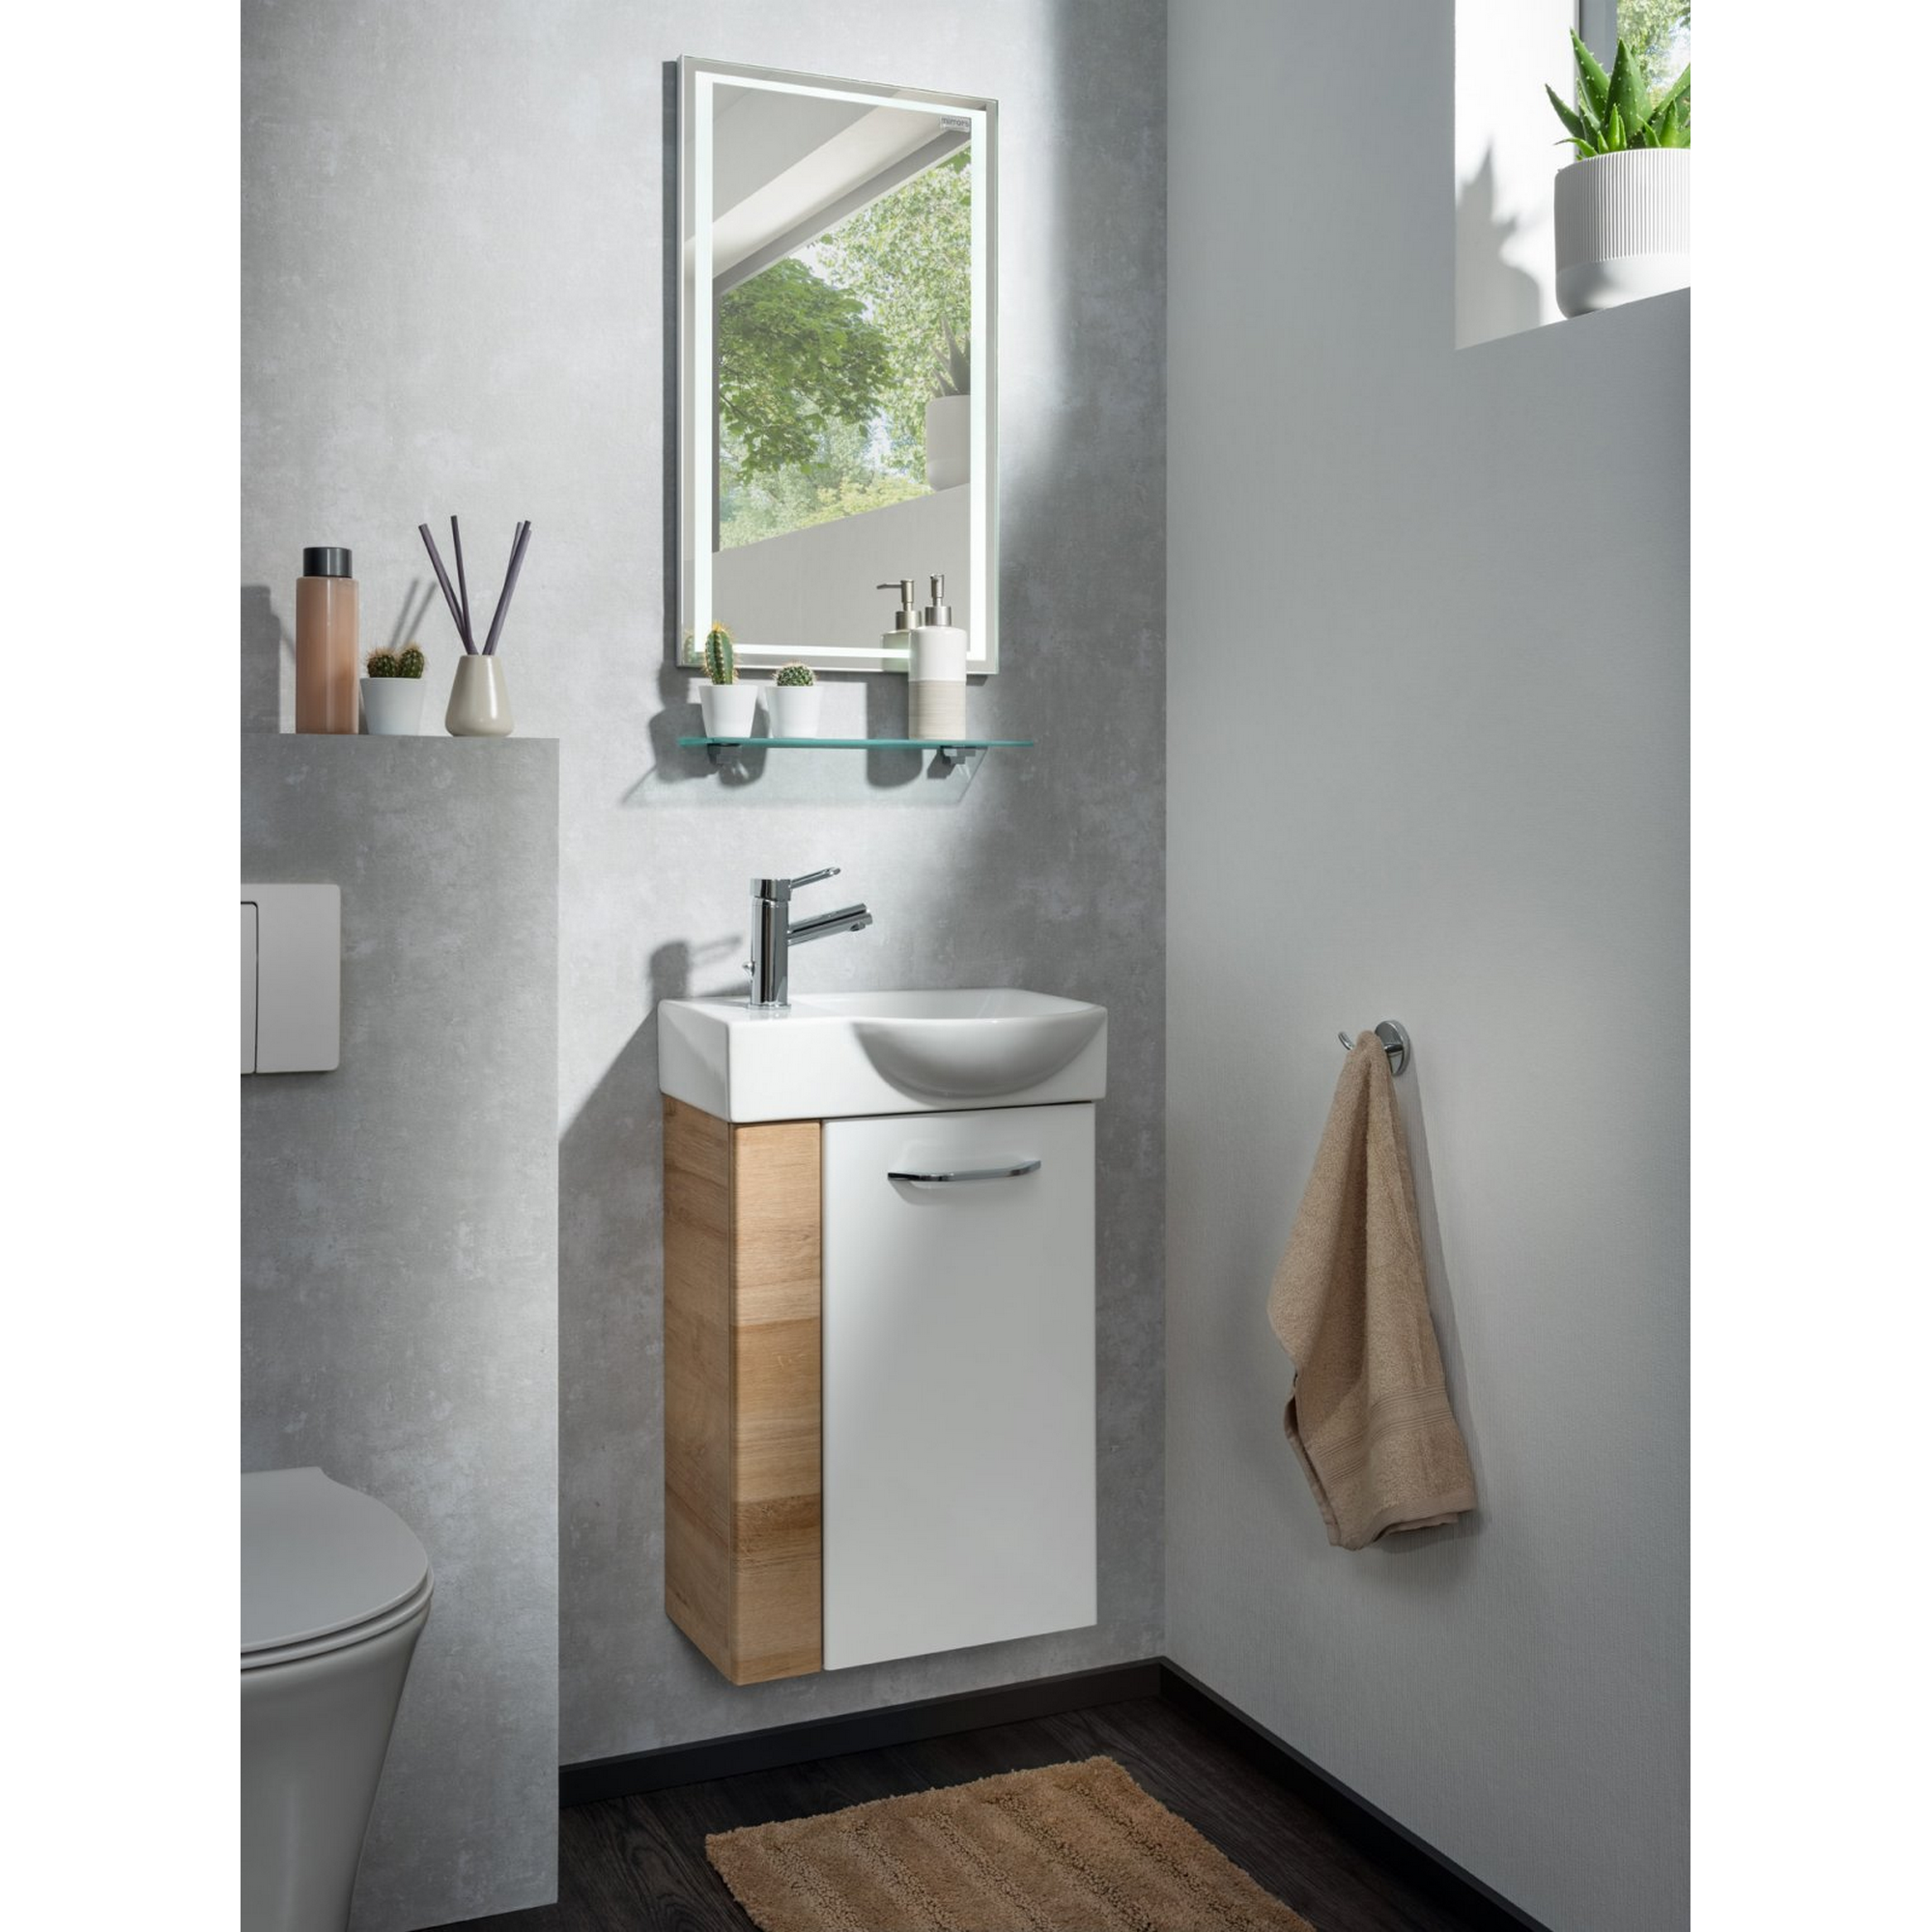 Waschtisch-Unterschrank 'Milano' Asteiche/weiß 44 x 60 x 24,5 cm + product picture